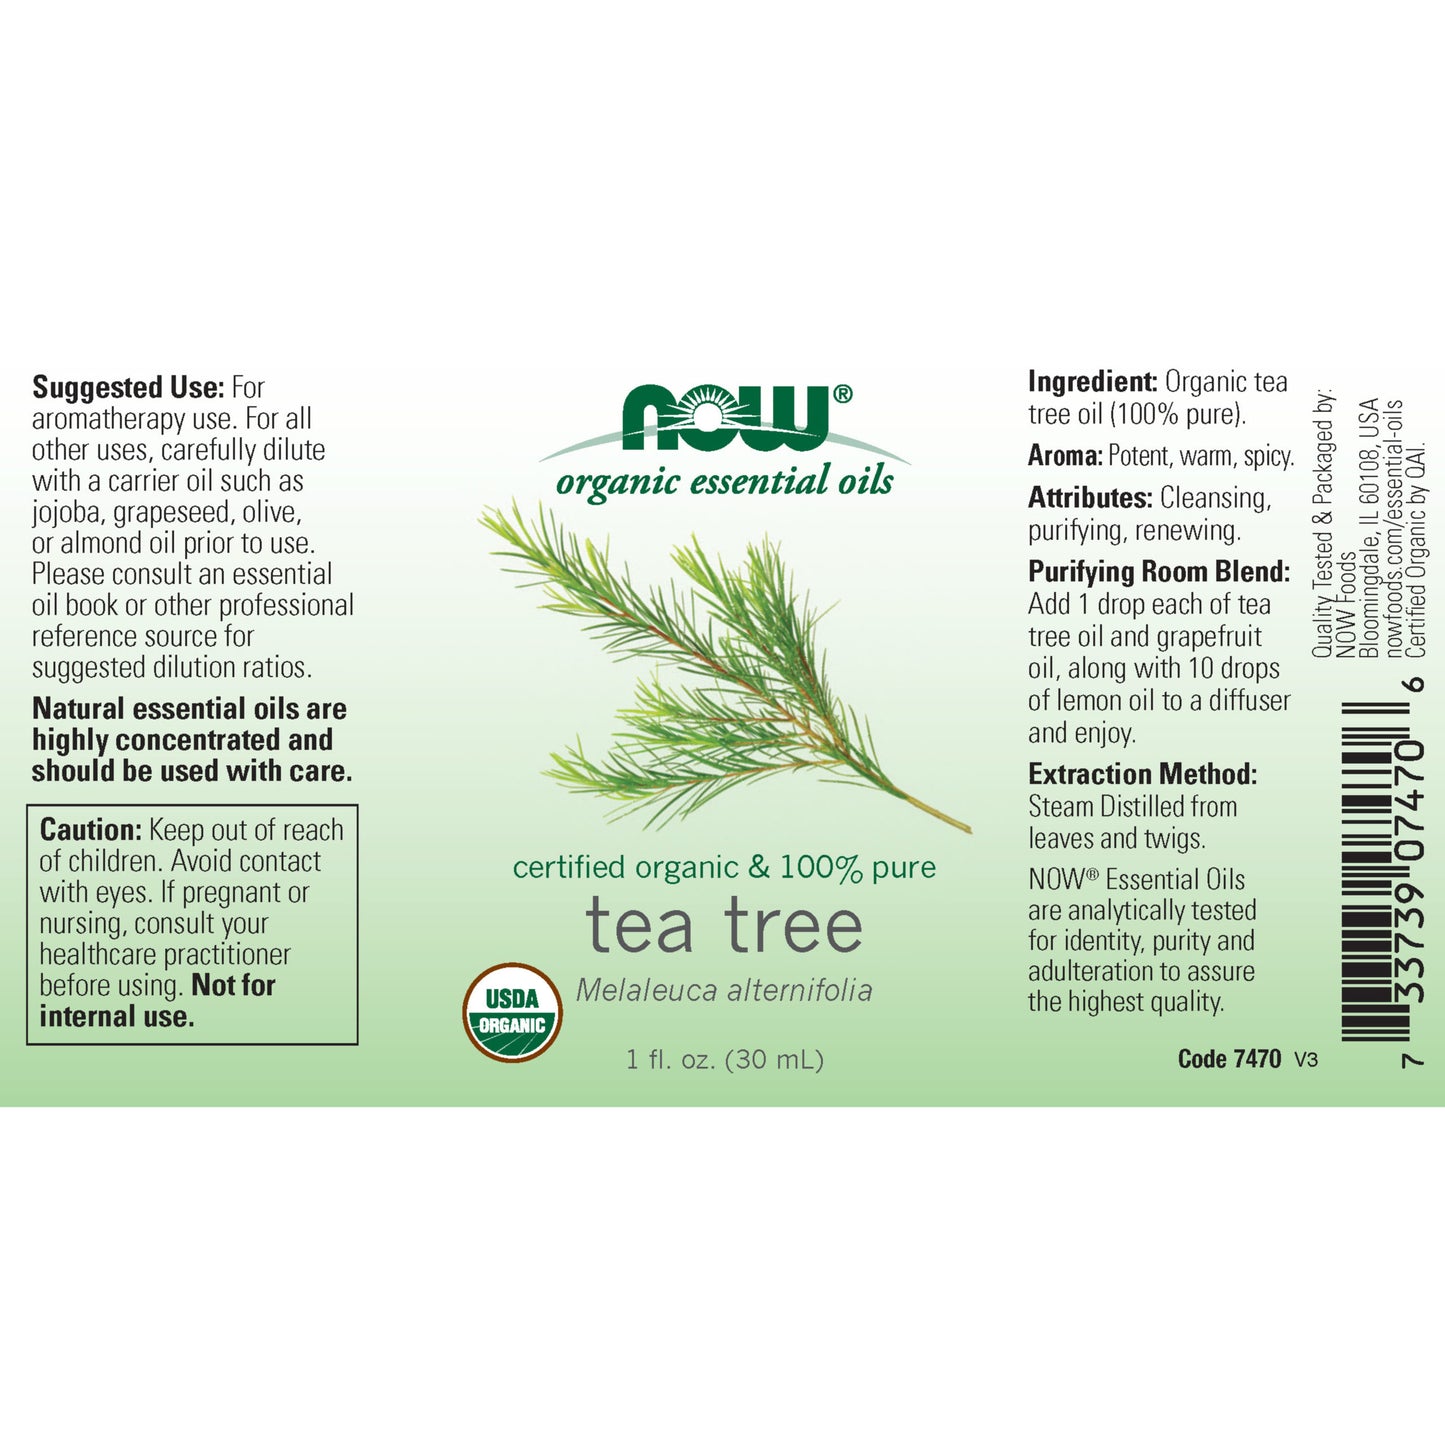 Organic Tea Tree Oil (30 ml)